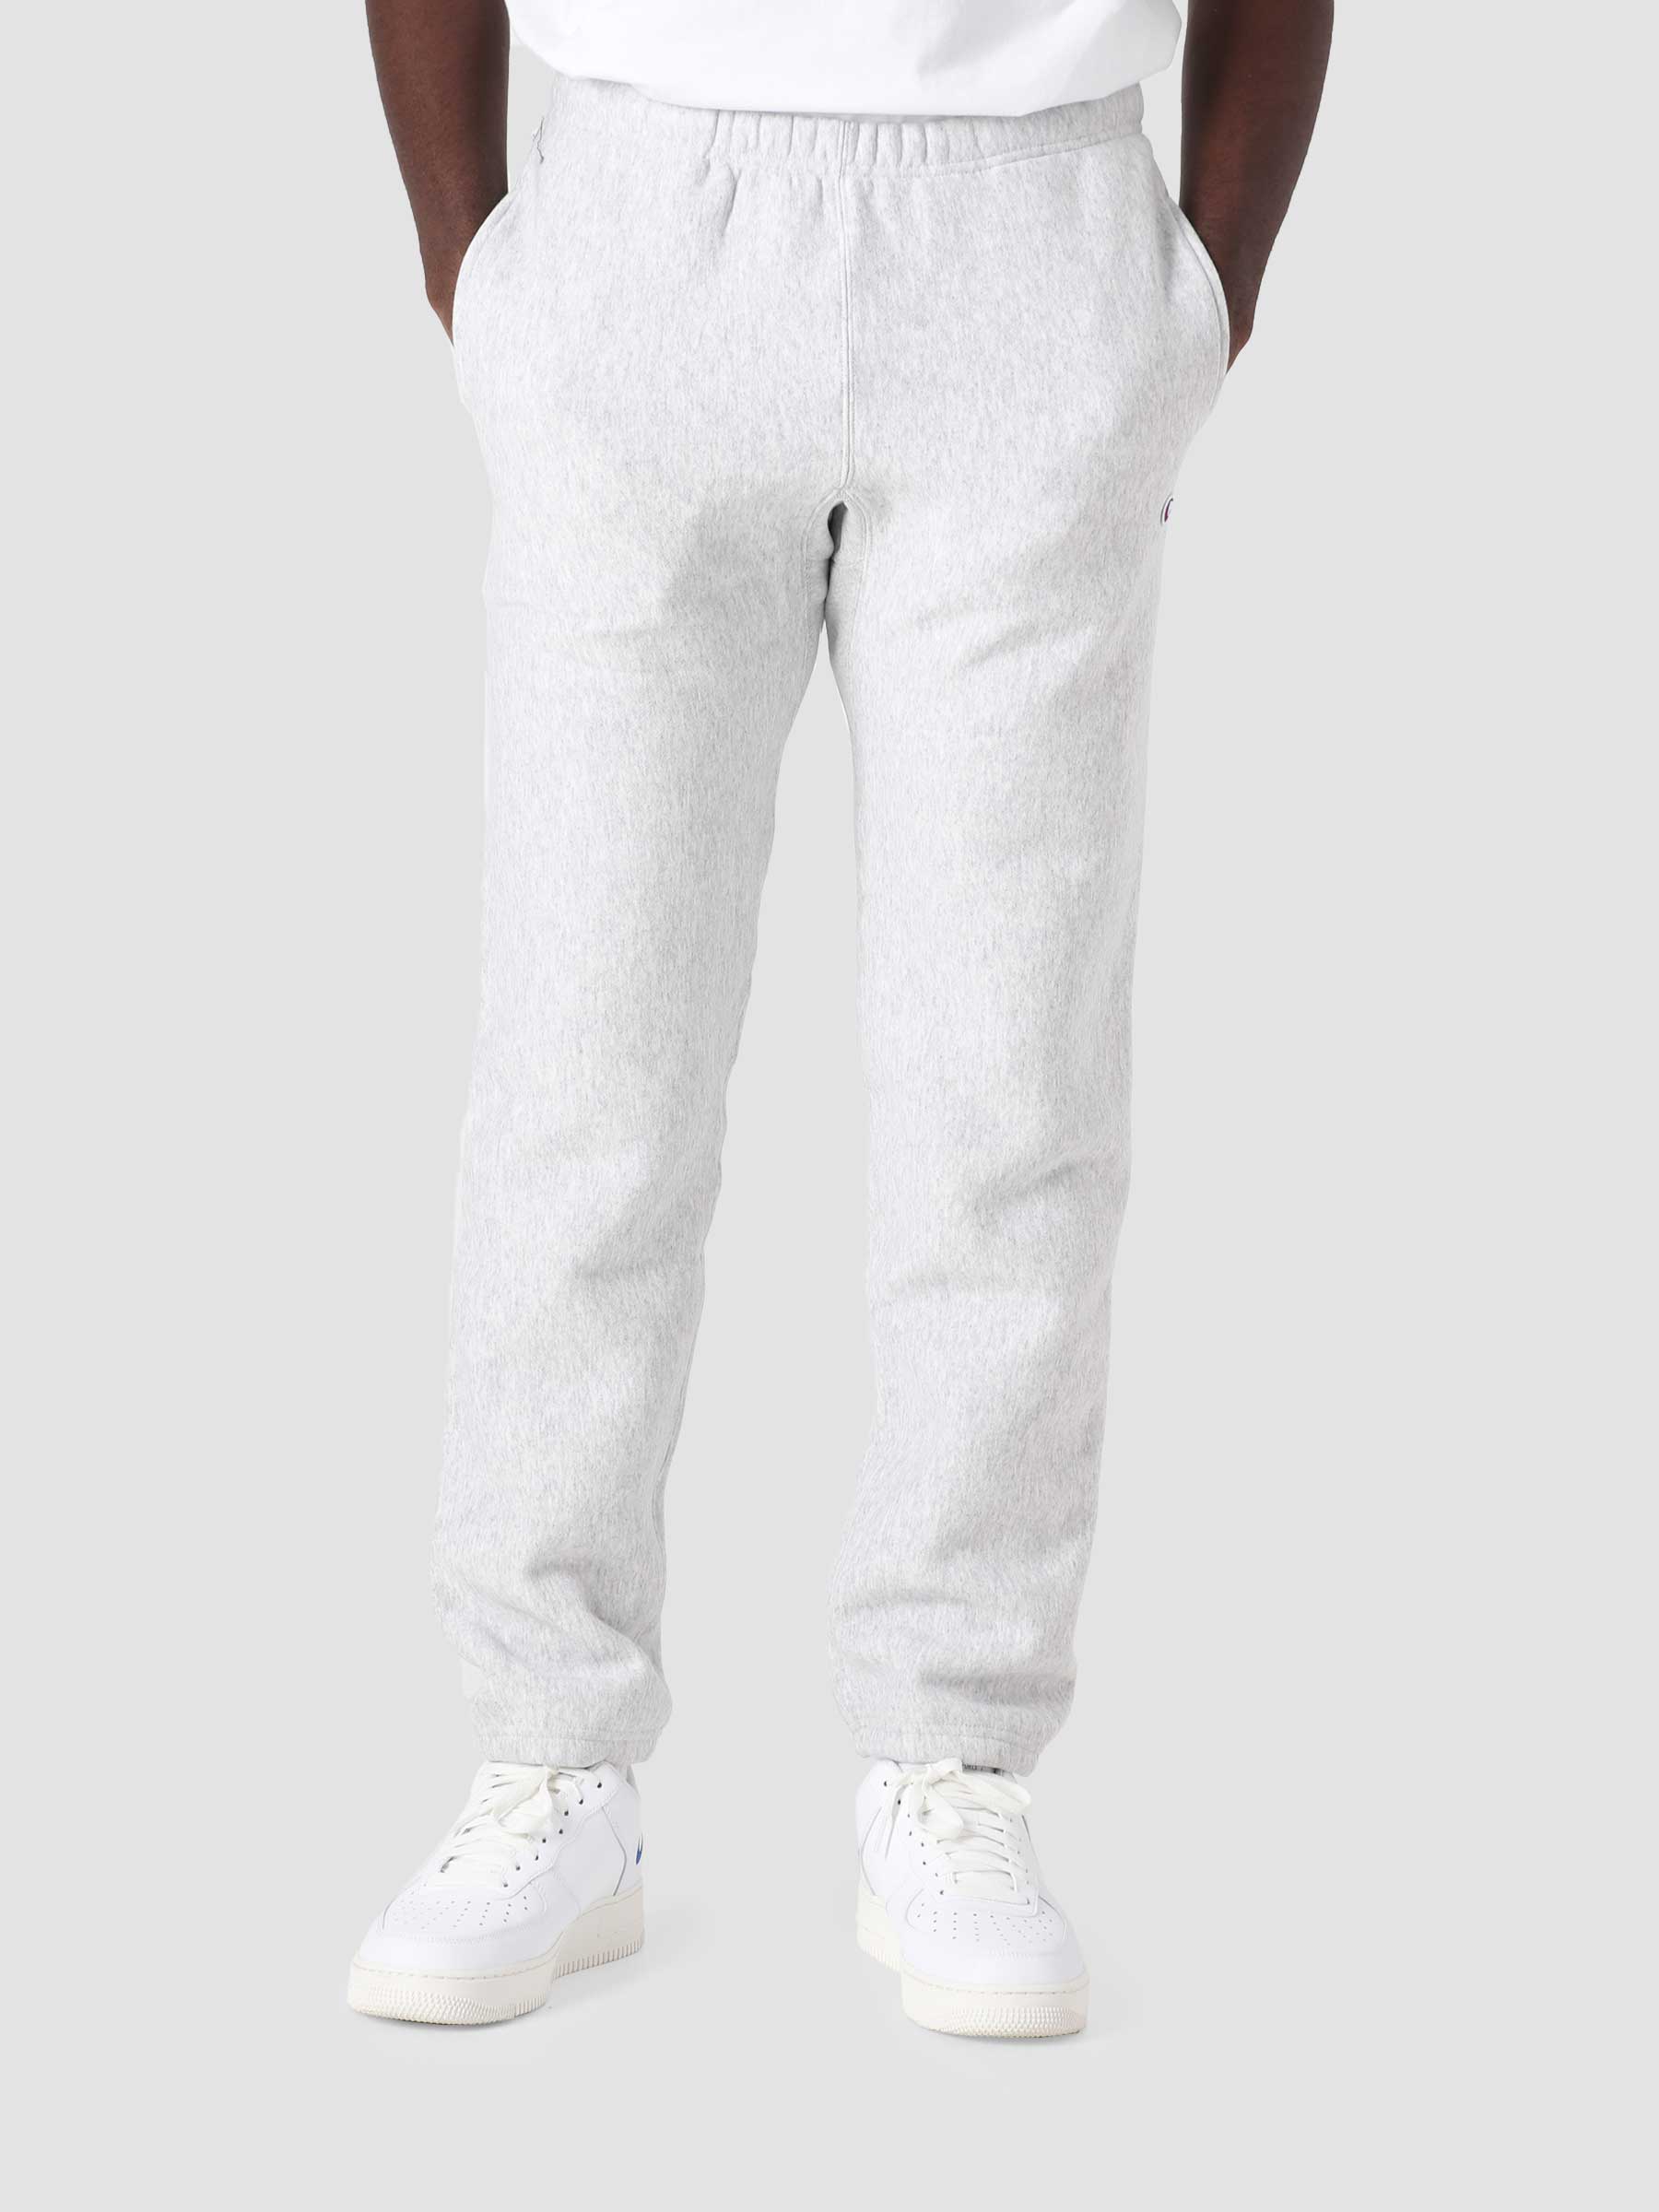 Reverse Weave Soft Fleece Elastic Cuff Pants Grey COKFQ7-EM004